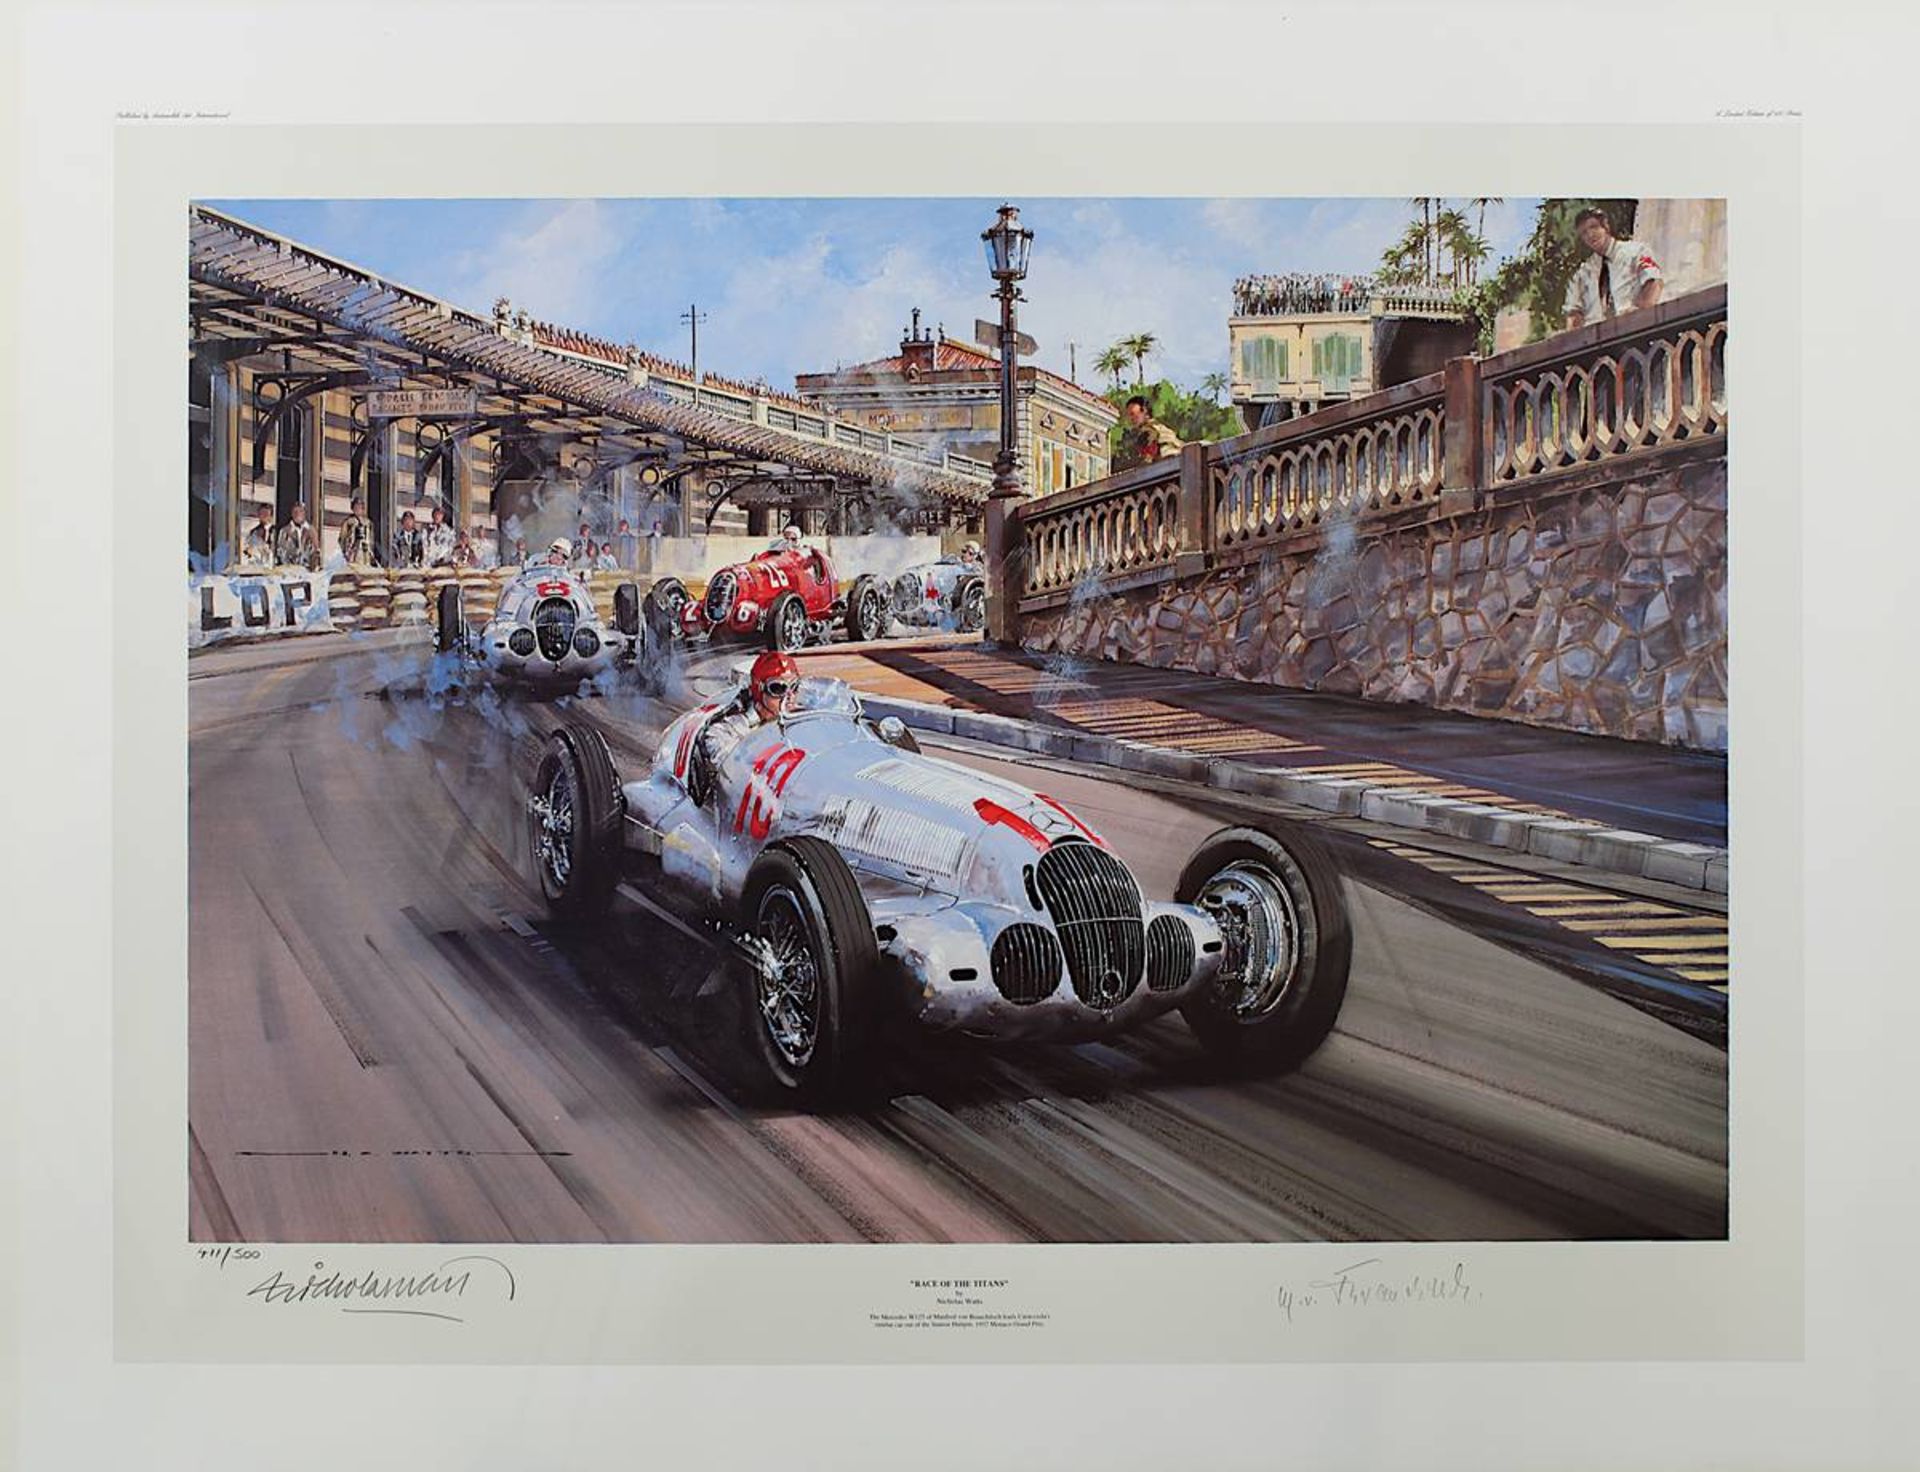 Watts, Nicholas (geb. 1947) "Race of the Titans" - Großer Preis von Monaco 1937 führend Manfred